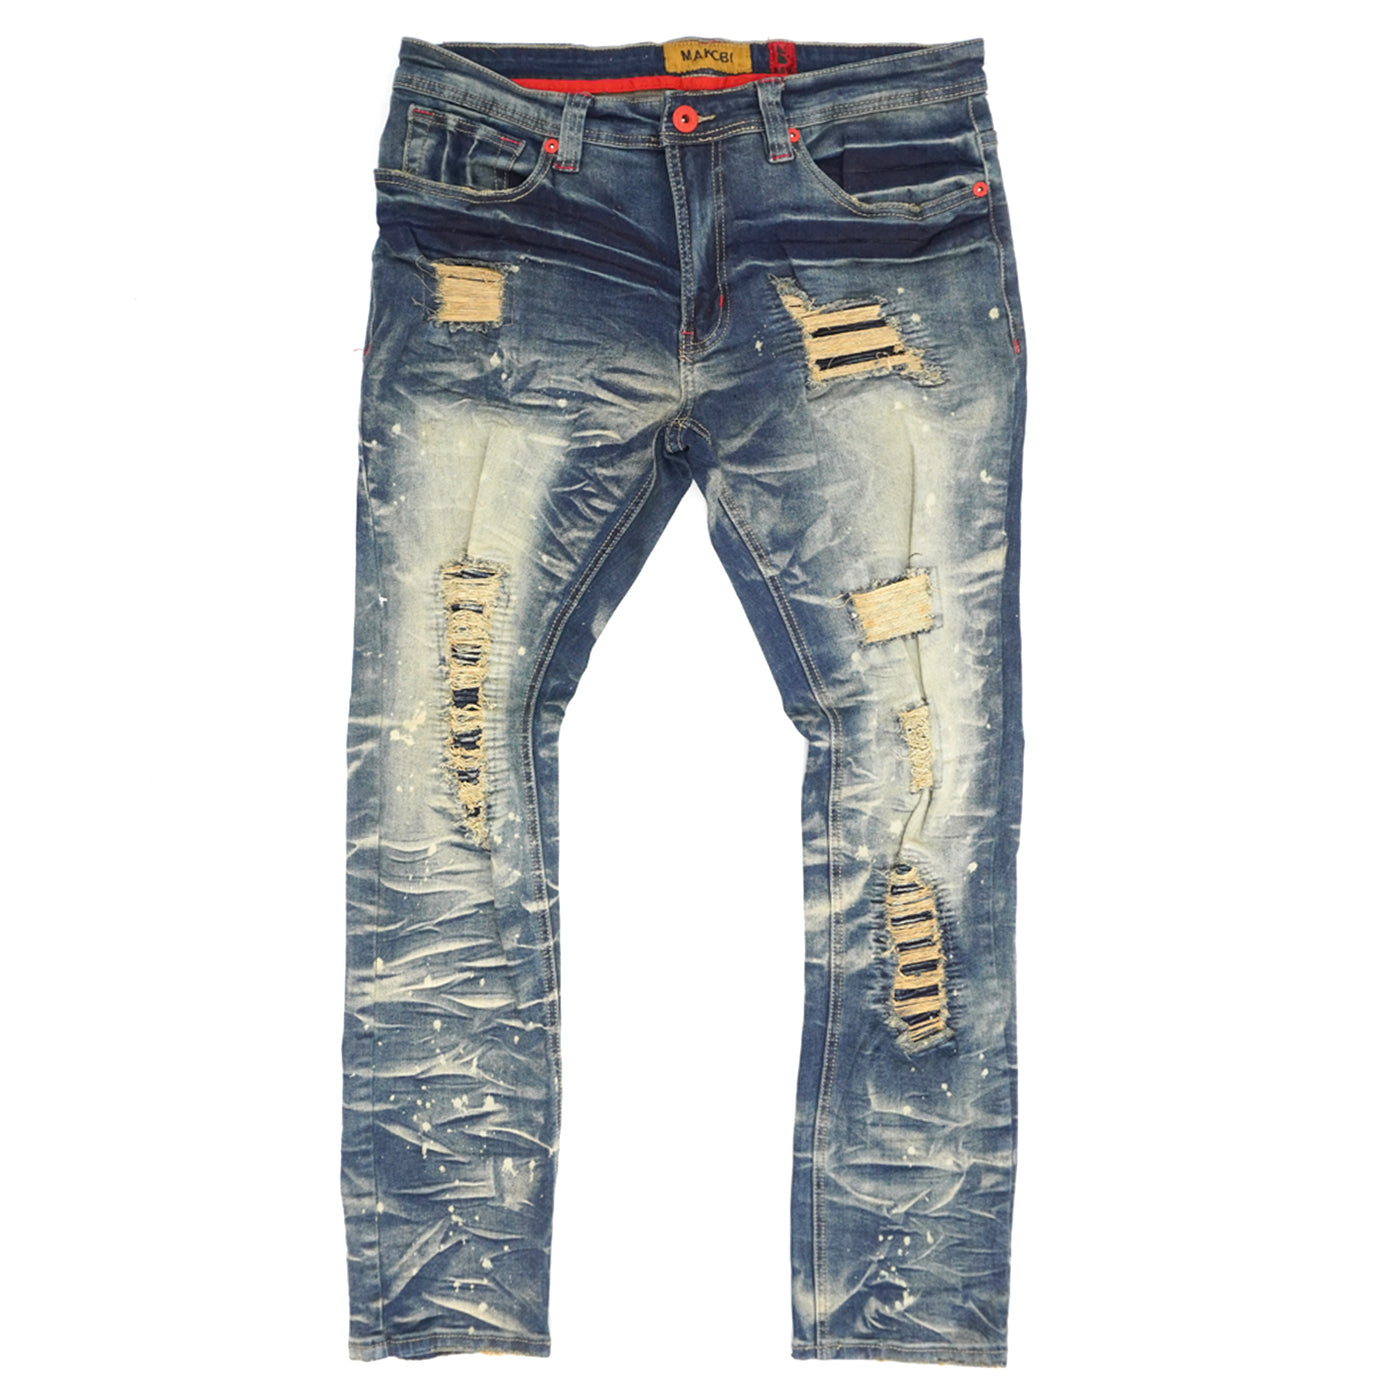 M1780 Pensacola  Shredded Jeans  - Vintage Wash